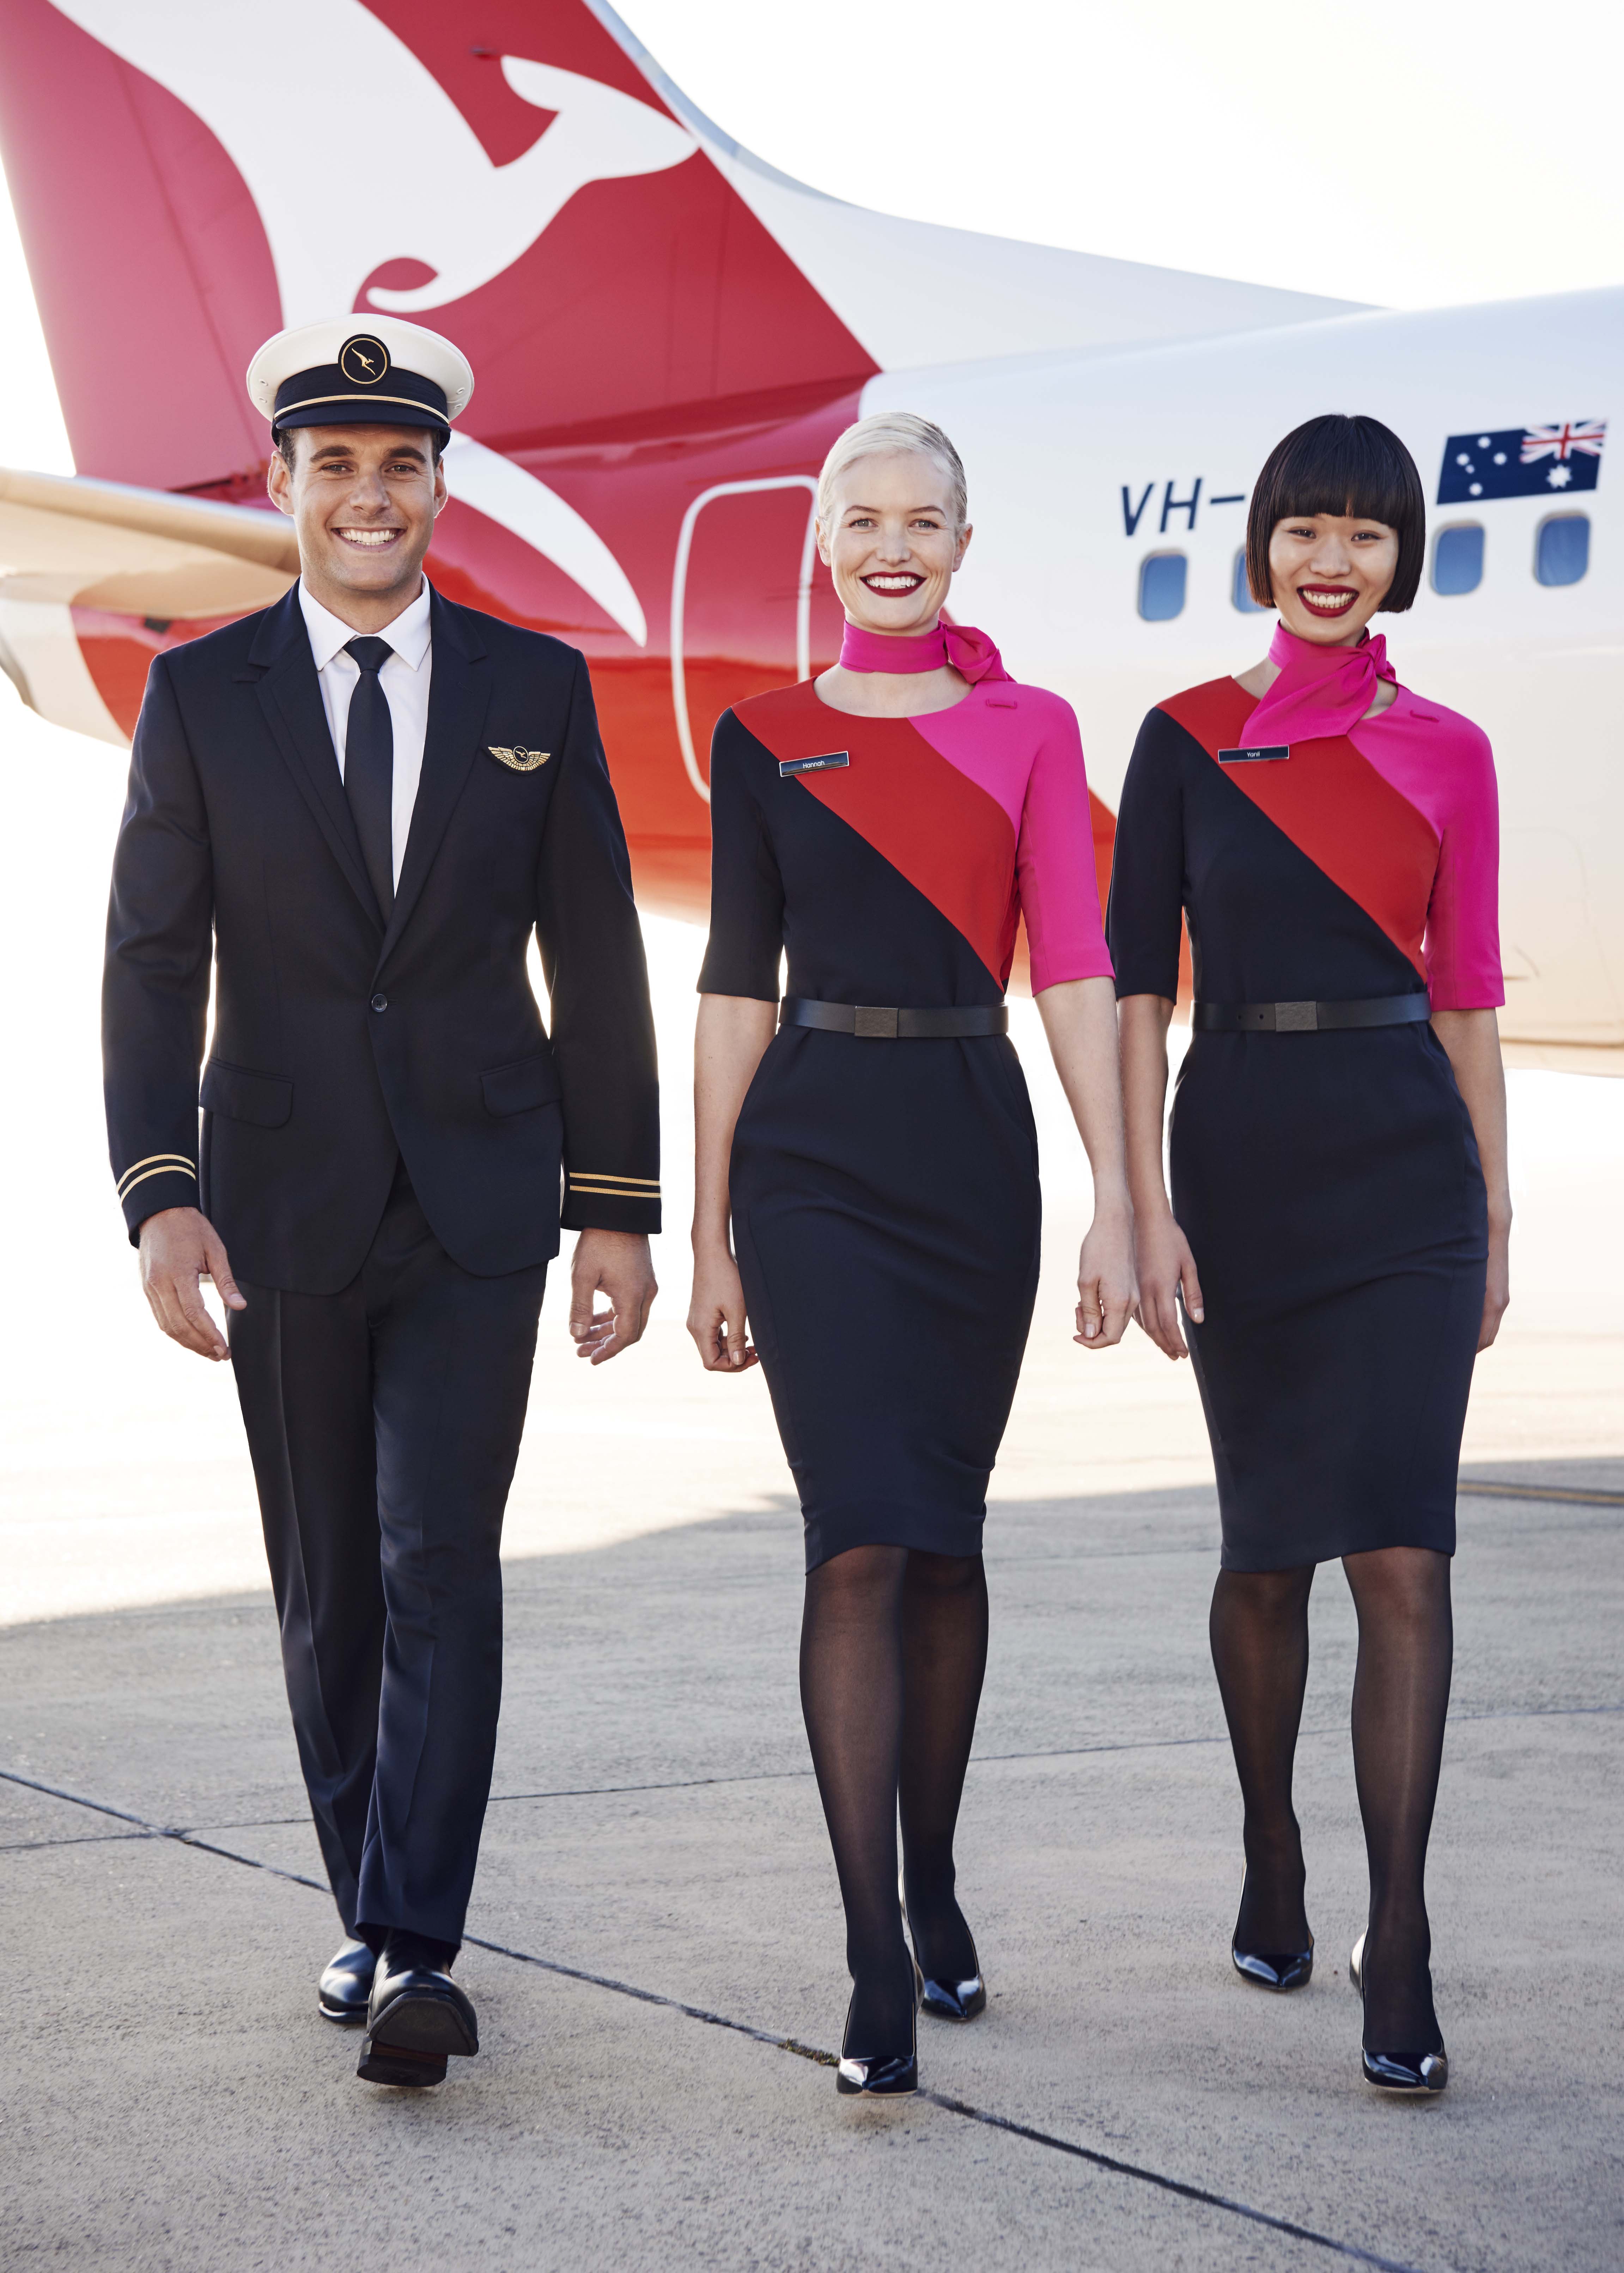 News Qantas Pilot Uniform Image1 